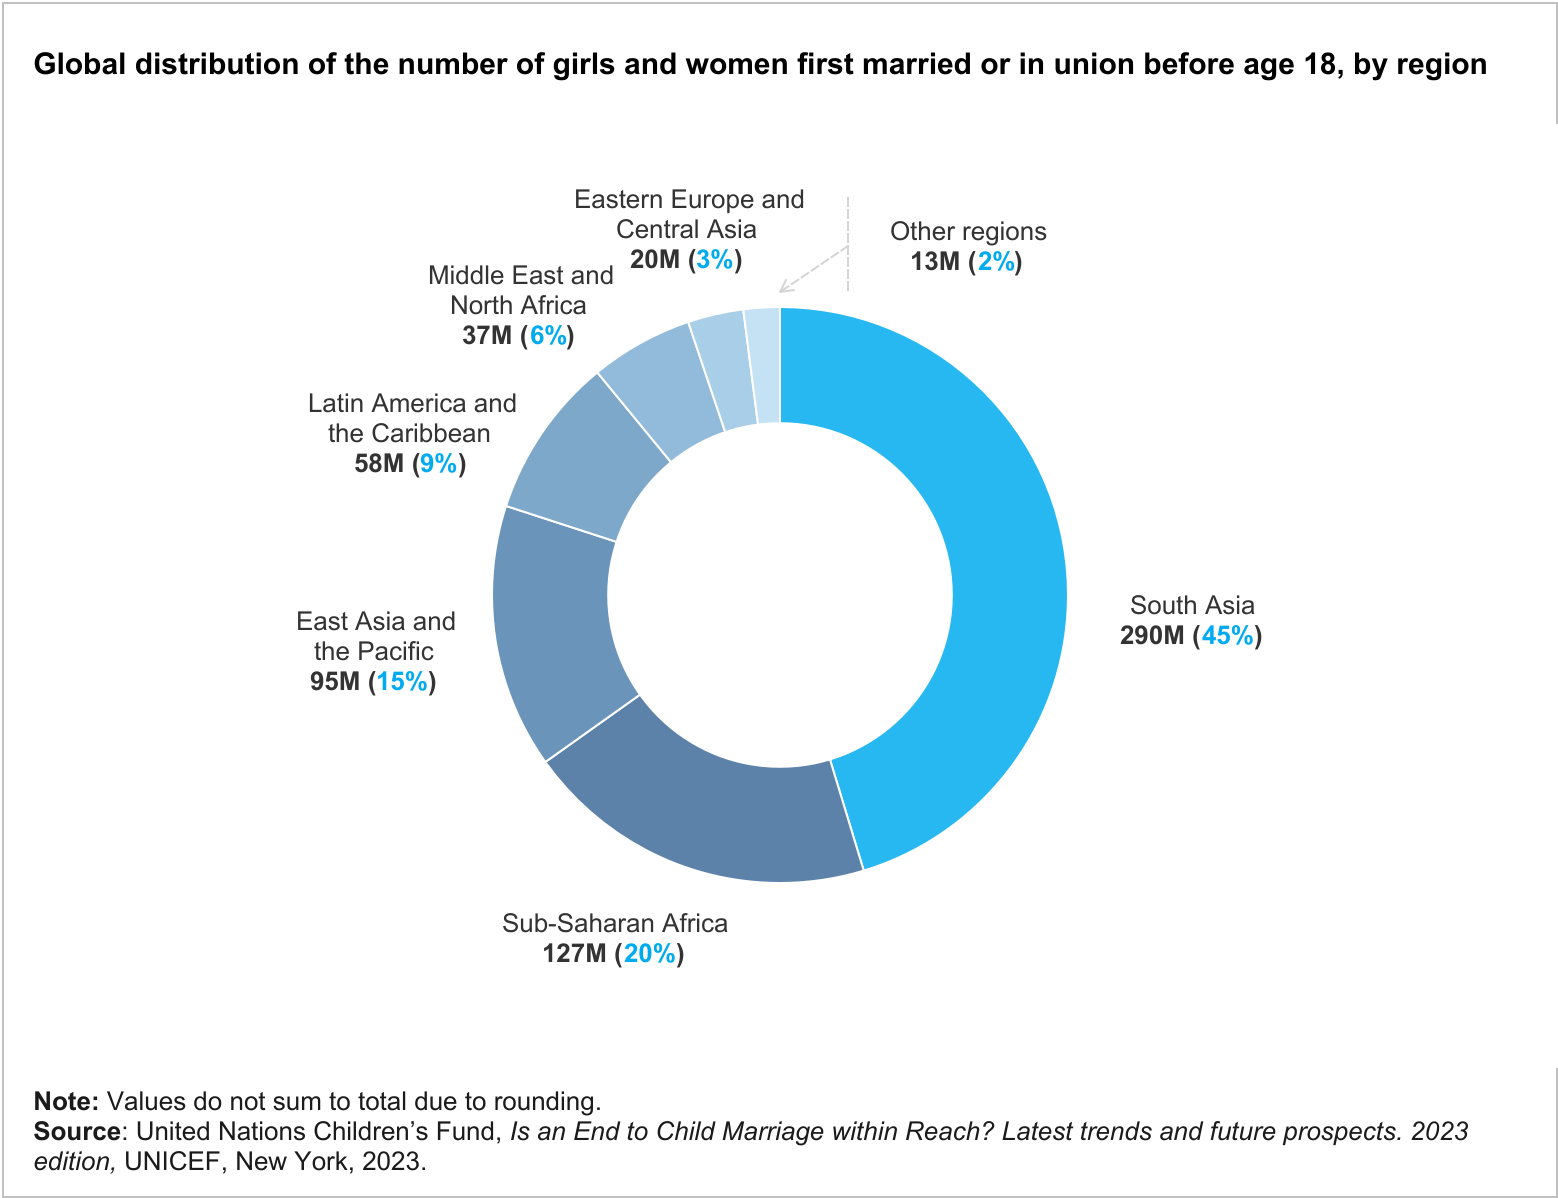 Gráfico que muestra la distribución global del número de niñas y mujeres que se casan por primera vez antes de los 18 años